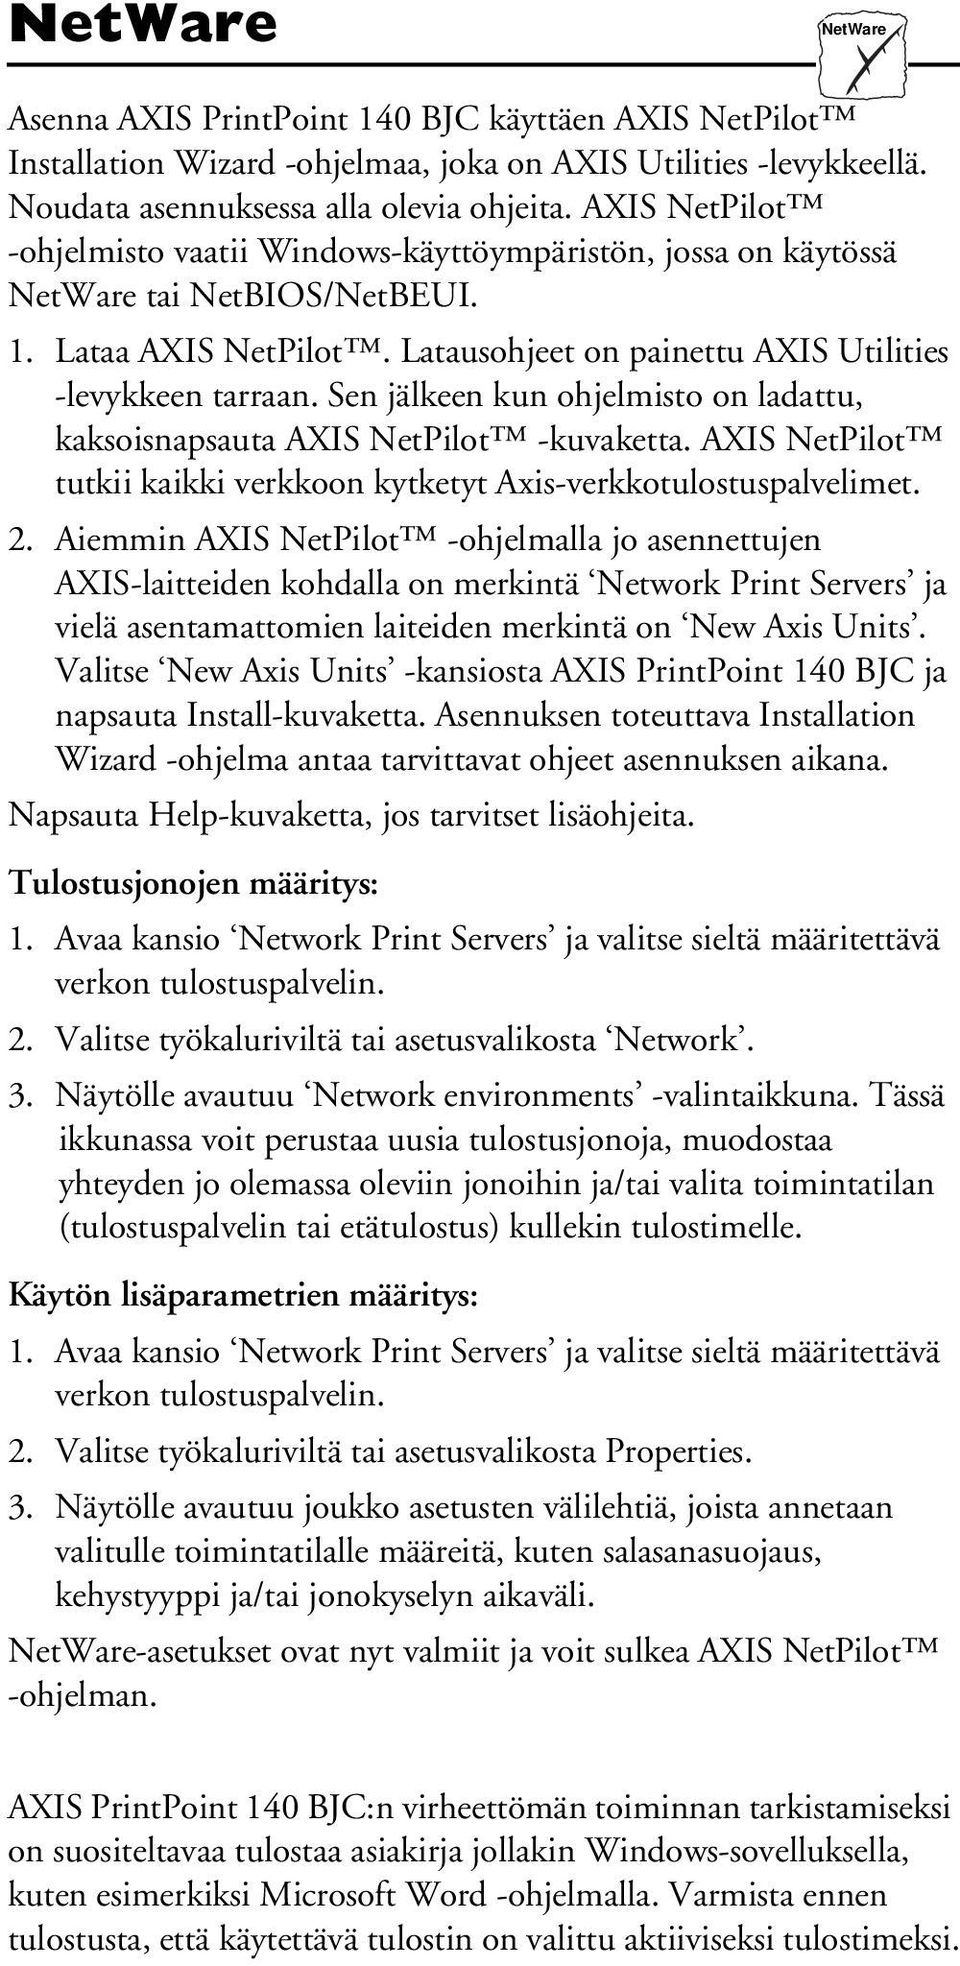 Sen jälkeen kun ohjelmisto on ladattu, kaksoisnapsauta AXIS NetPilot -kuvaketta. AXIS NetPilot tutkii kaikki verkkoon kytketyt Axis-verkkotulostuspalvelimet. 2.